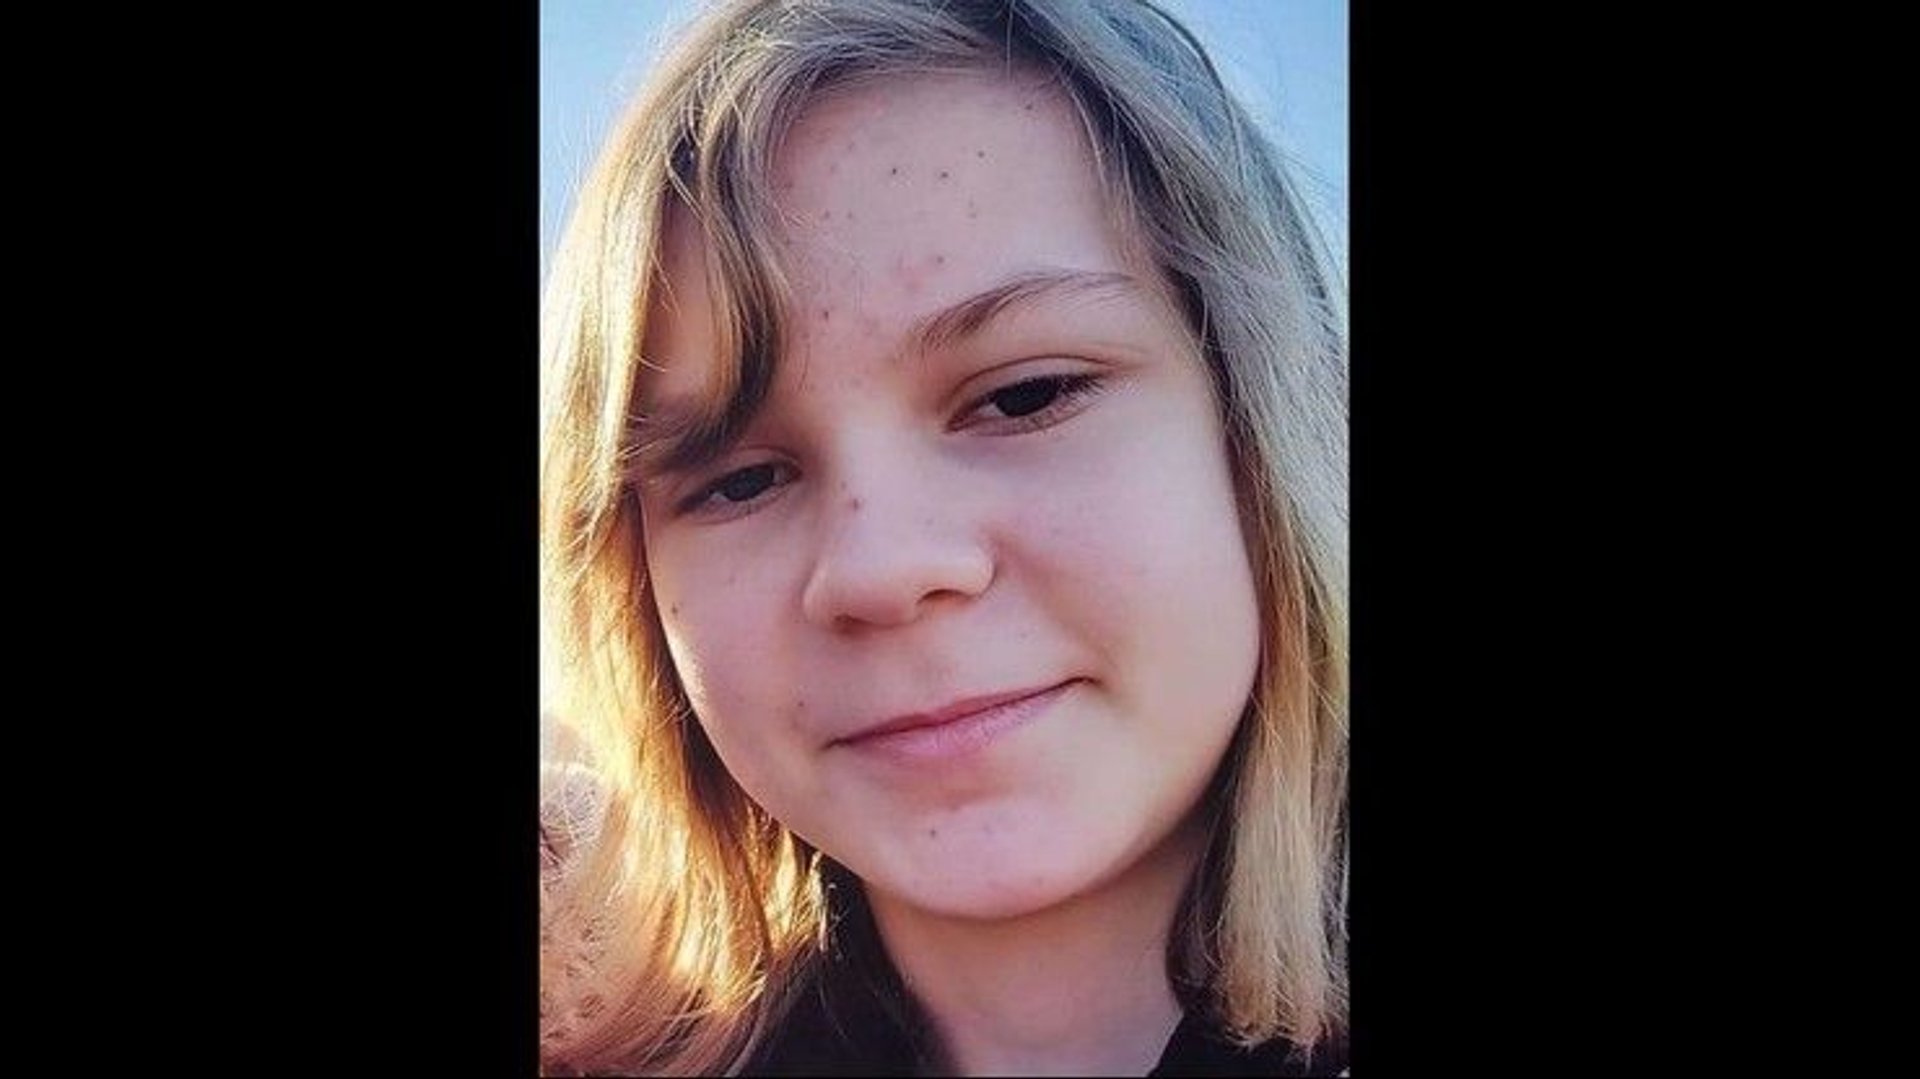 Zakopiańska policja prosi o pomoc w znalezieniu 11-letniej dziewczyny.